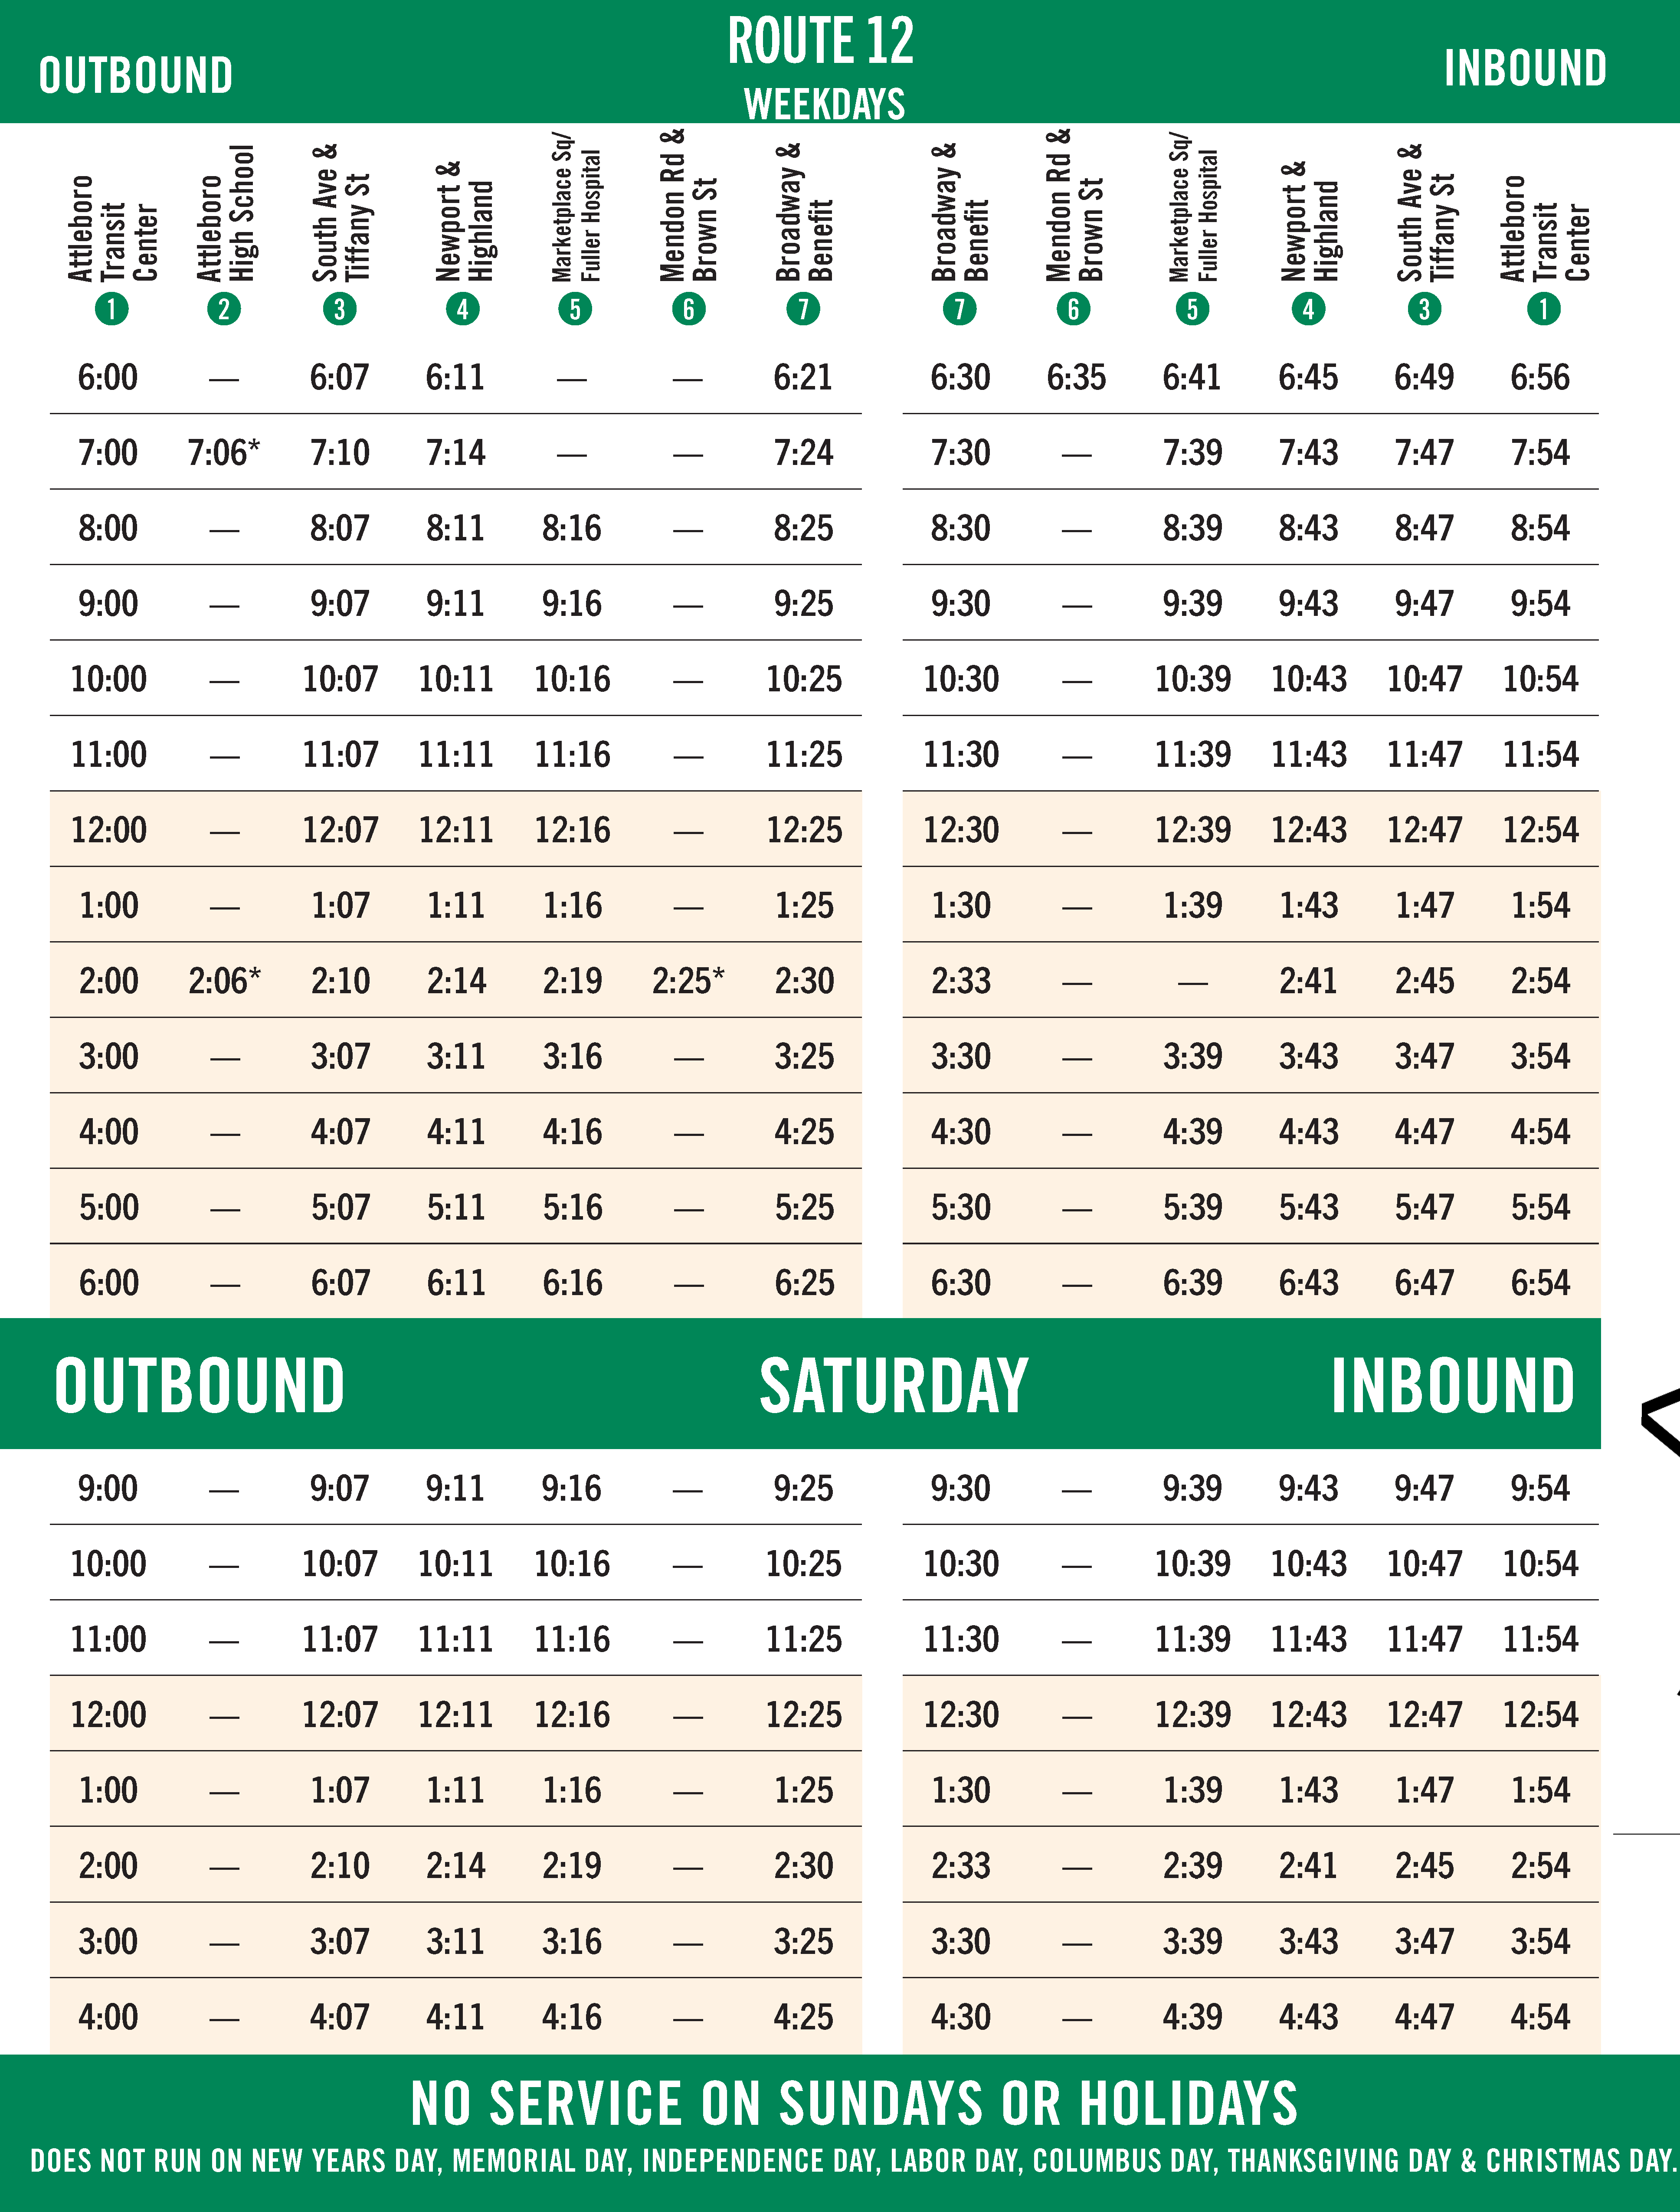 GATRA Route 12 Timetable